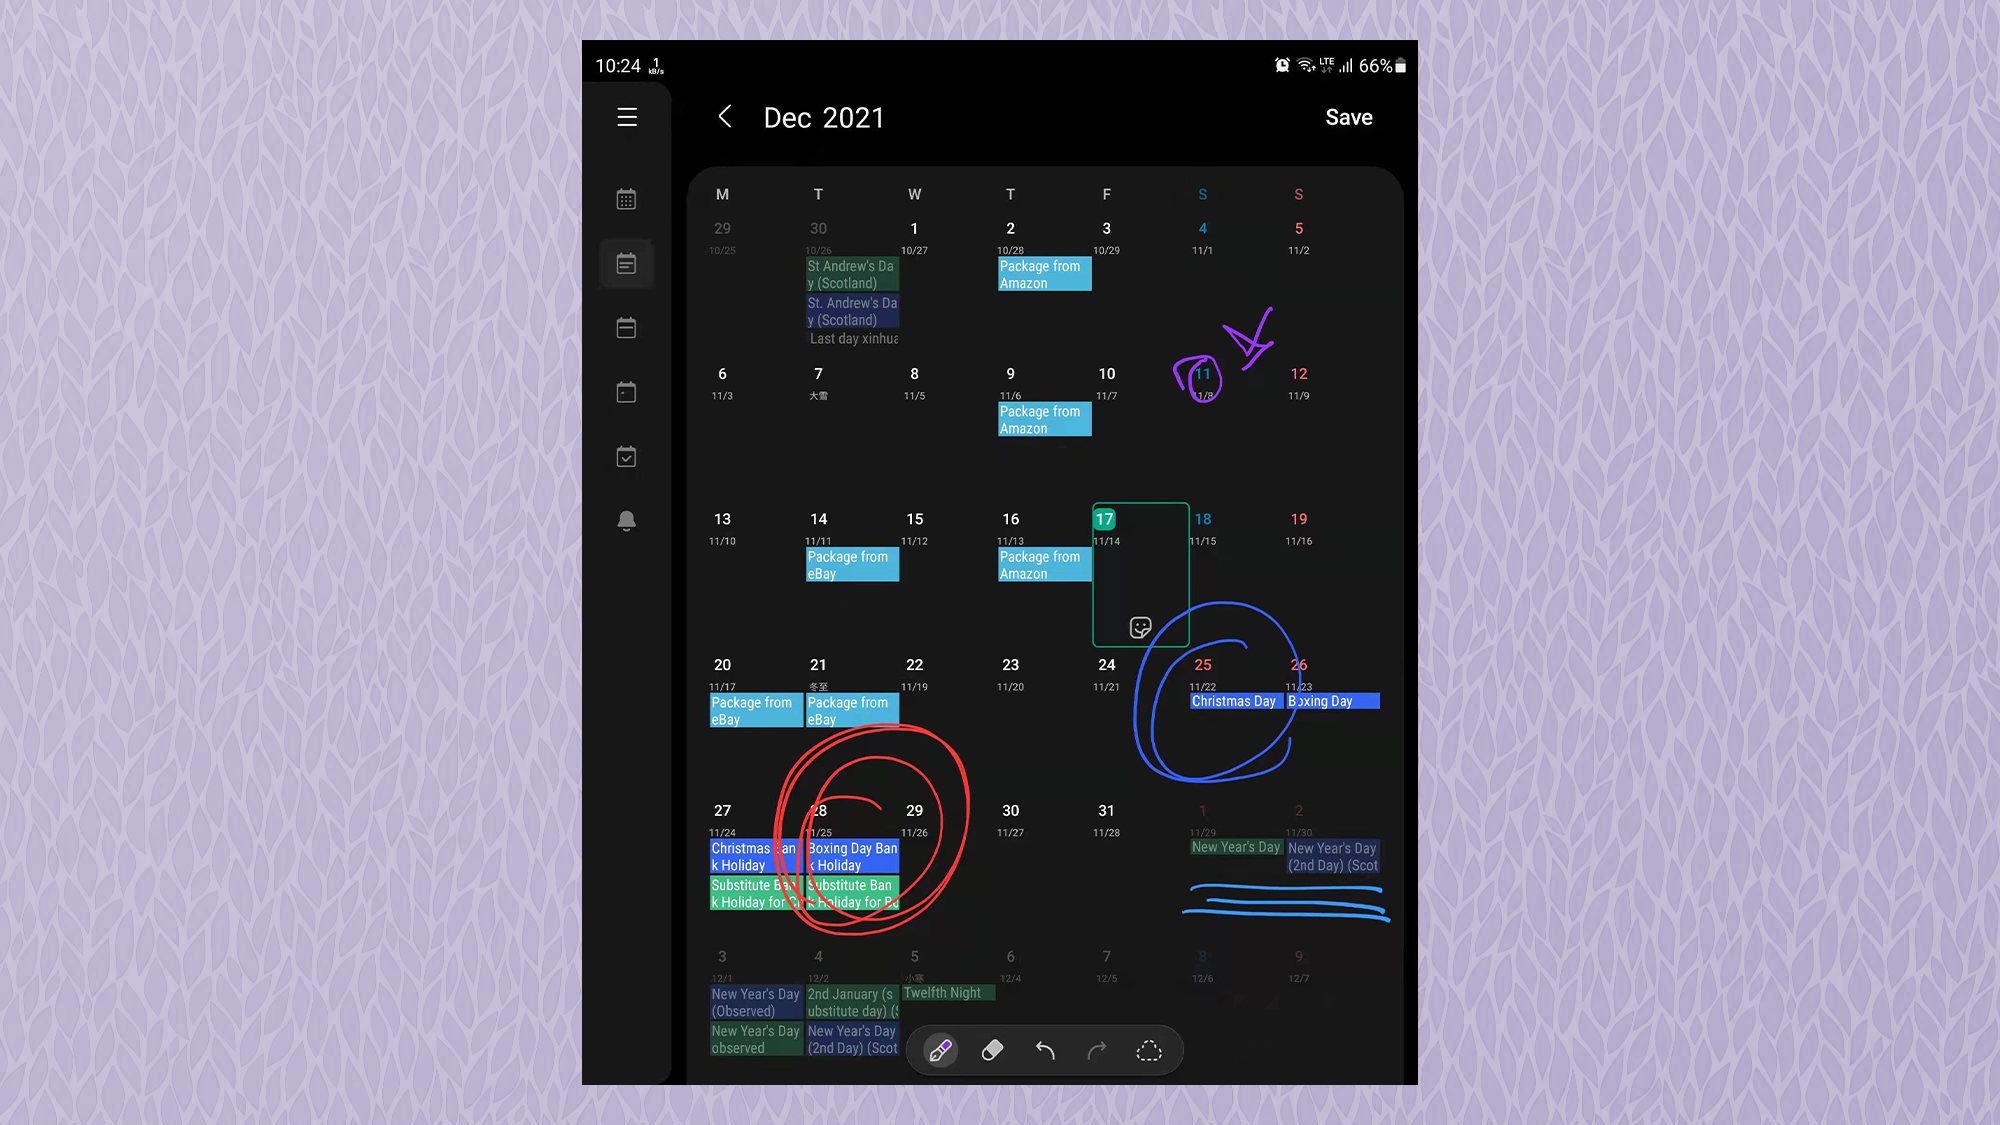 Снимок экрана Samsung Galaxy Z Fold3, показывающий вид календаря с рукописными заметками на нем